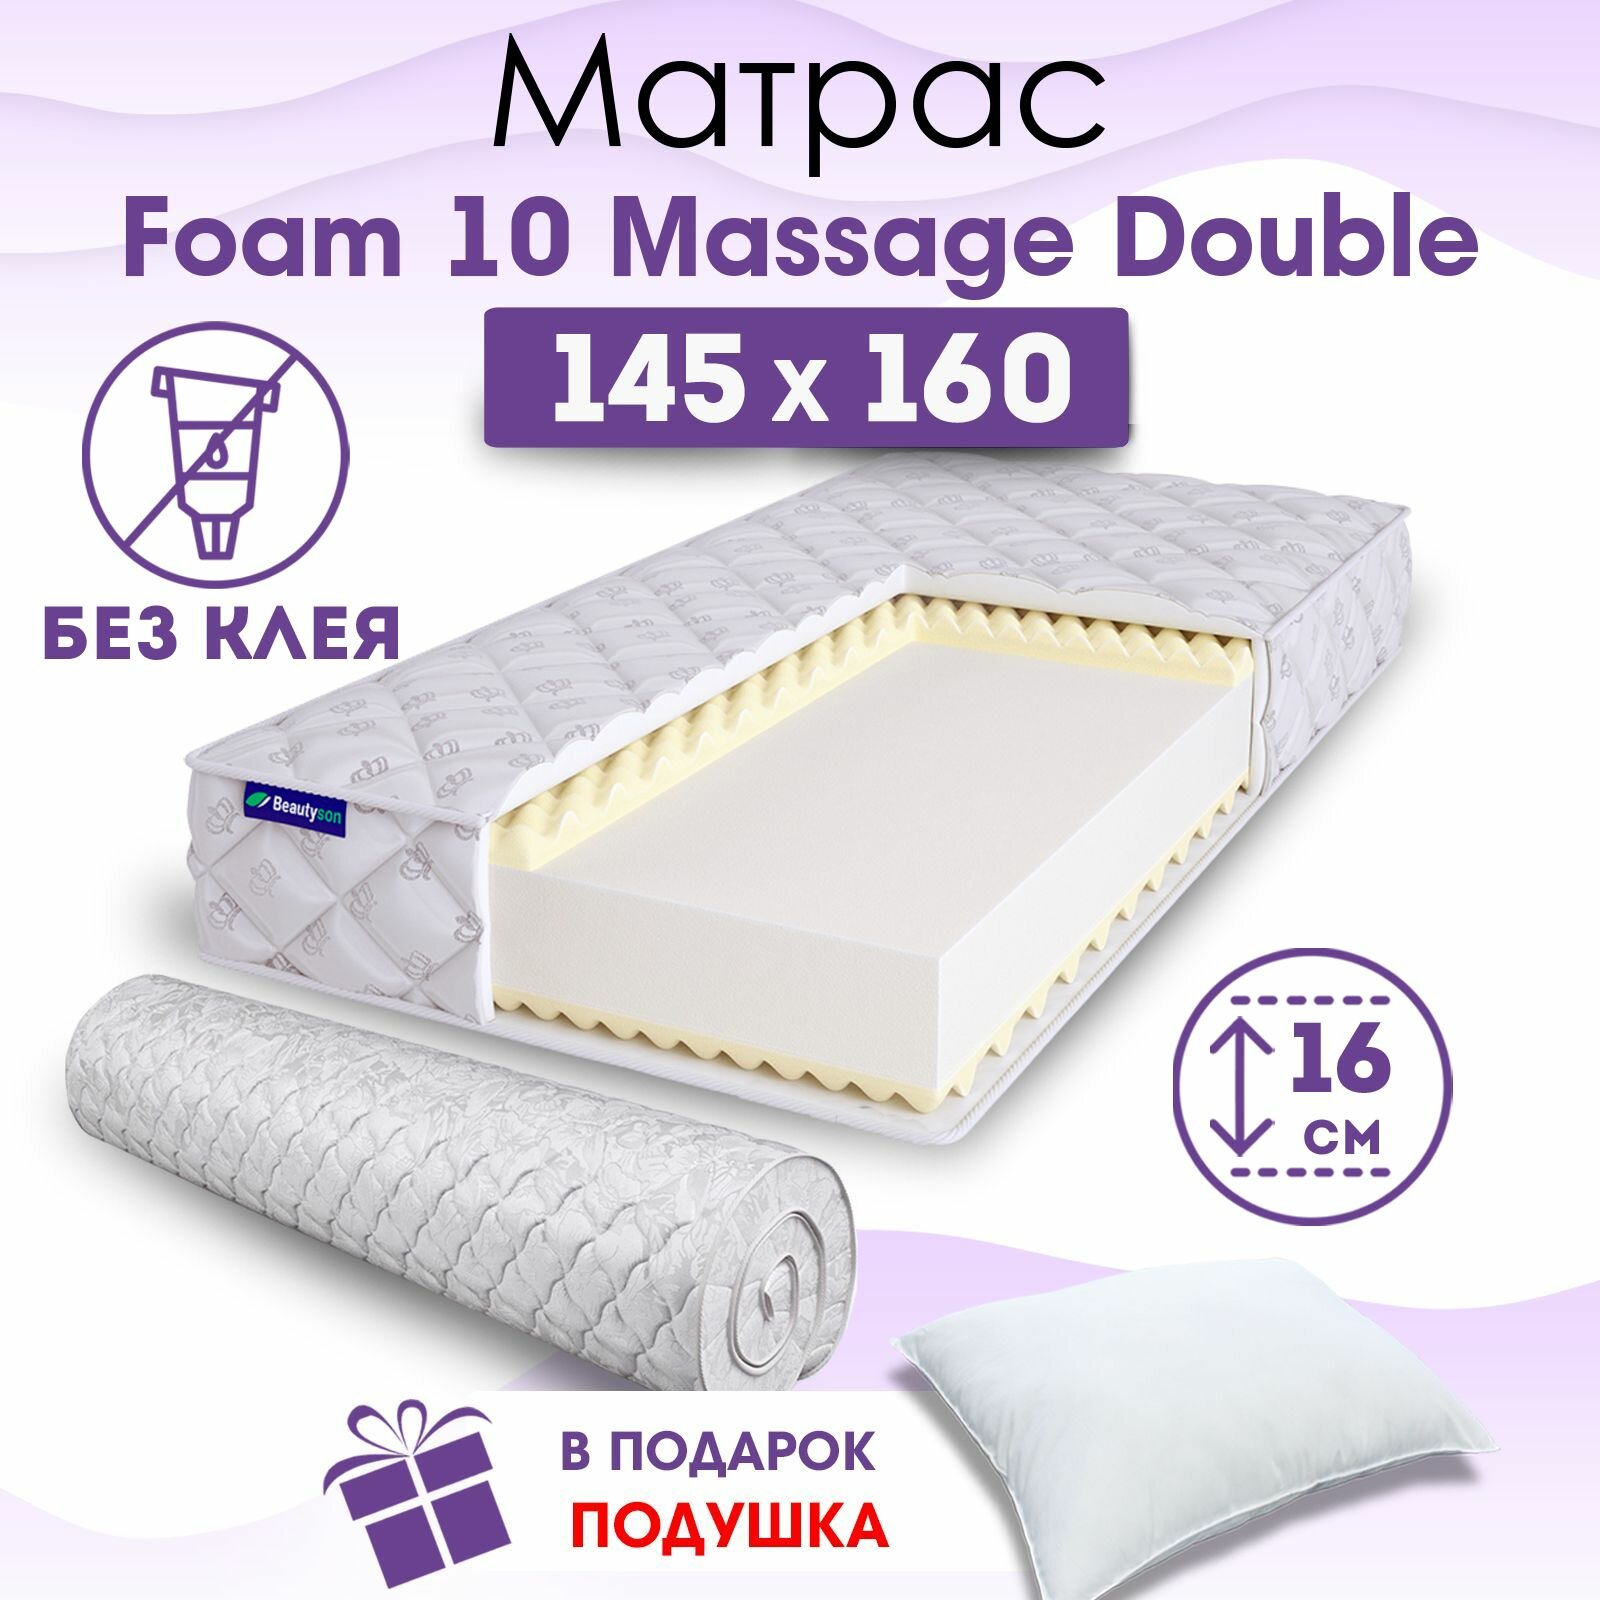 Ортопедический матрас Beautyson Foam 10 Massage Double без клея, 145х160, 16 см, беспружинный, двуспальный, на кровать, для дивана, мягкий, не высокий